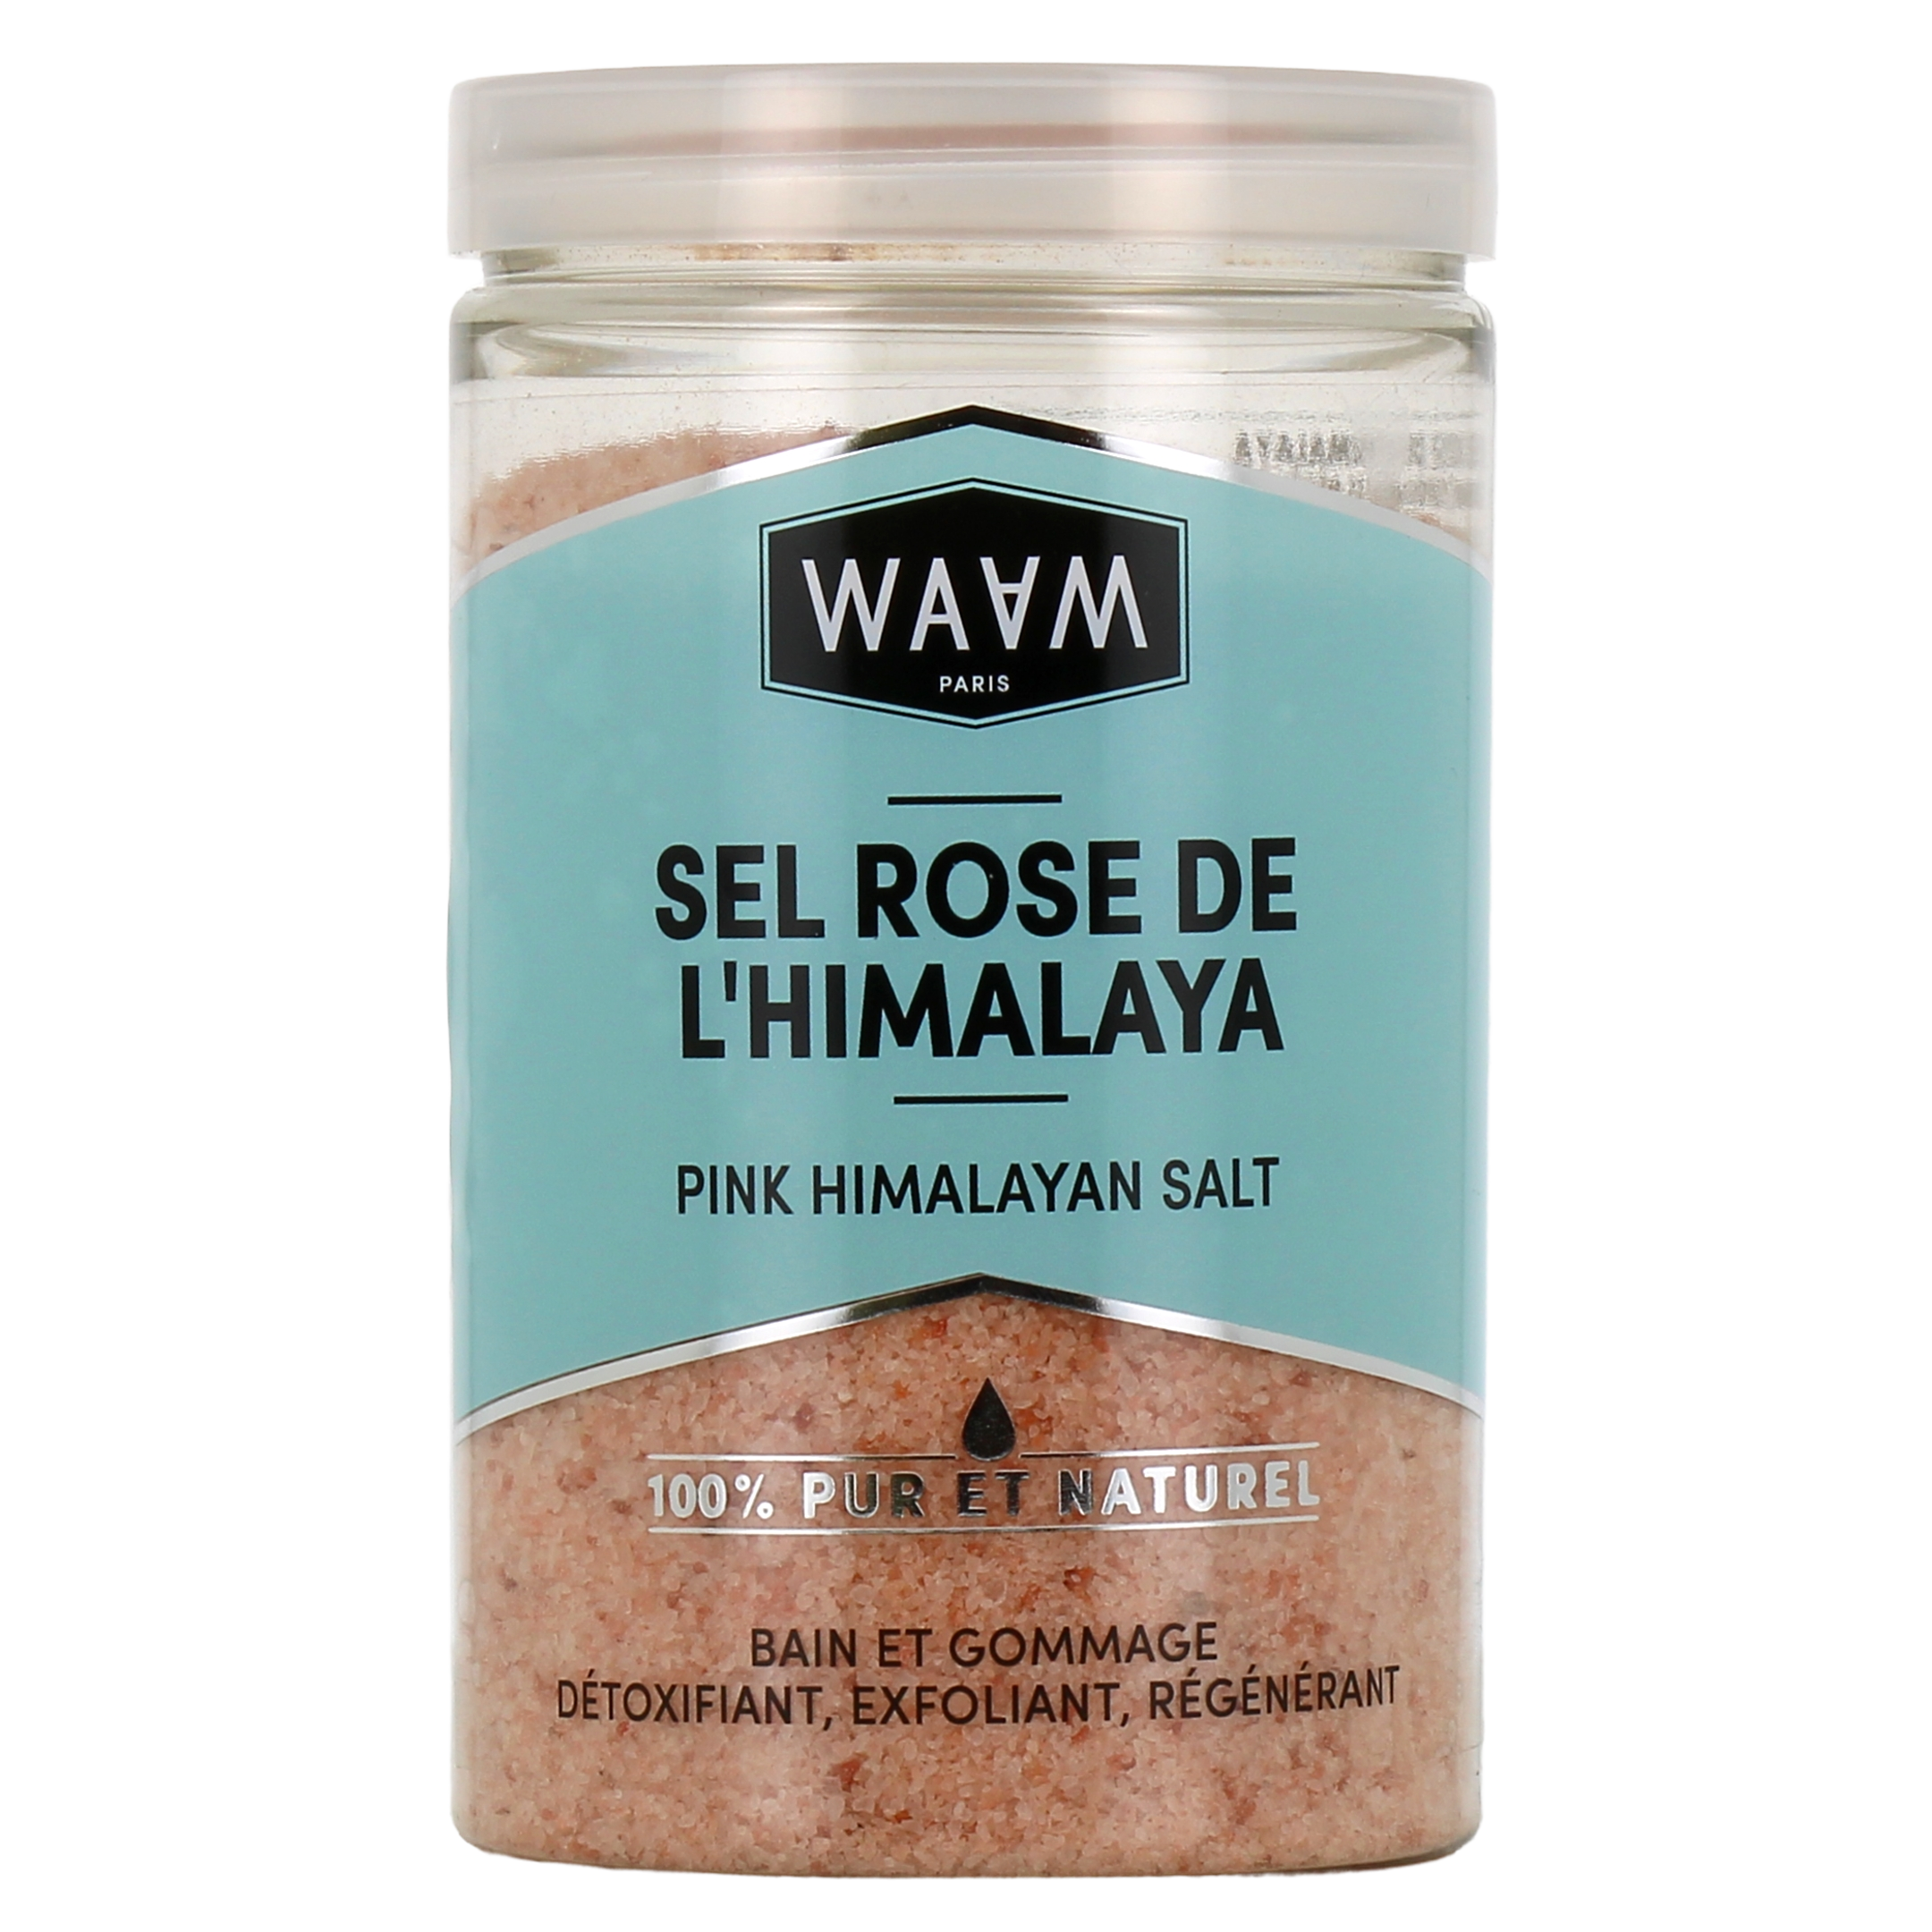 Les bienfaits du sel rose d'Himalaya